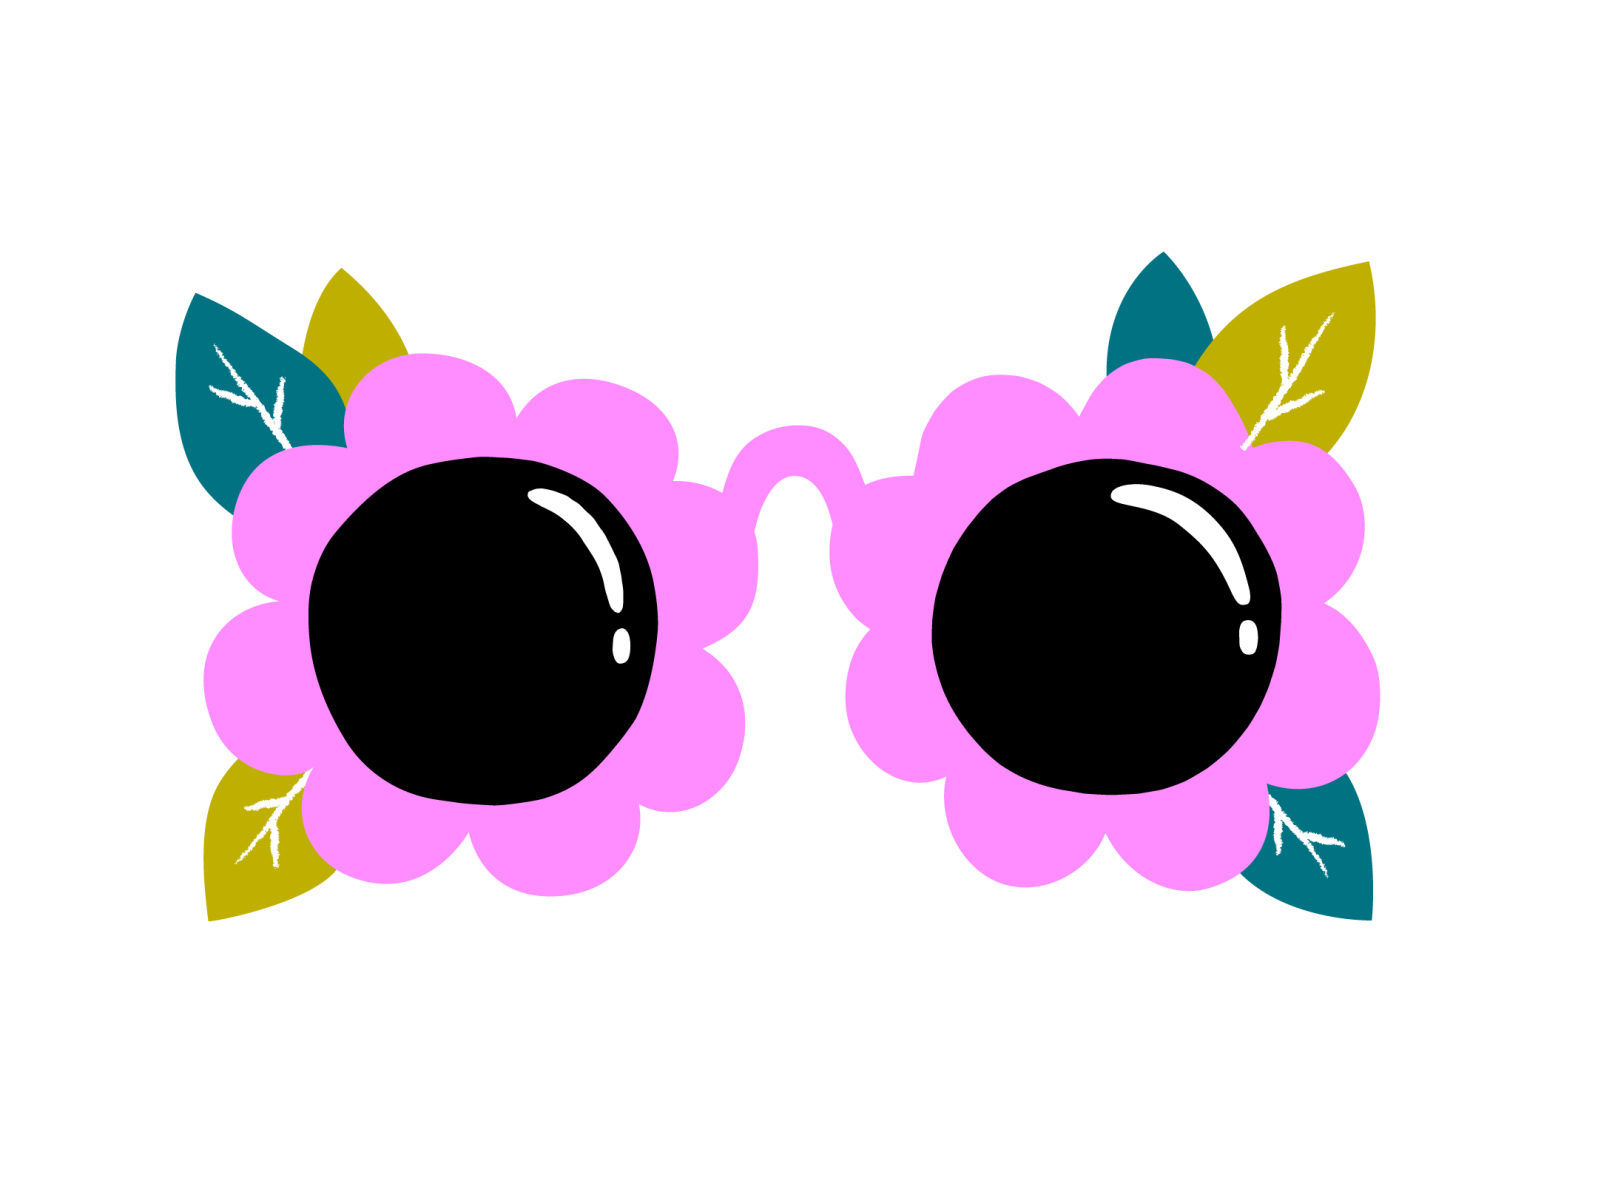 Flower sunnies sticker for Snapchat by Leena Kisonen on Dribbble